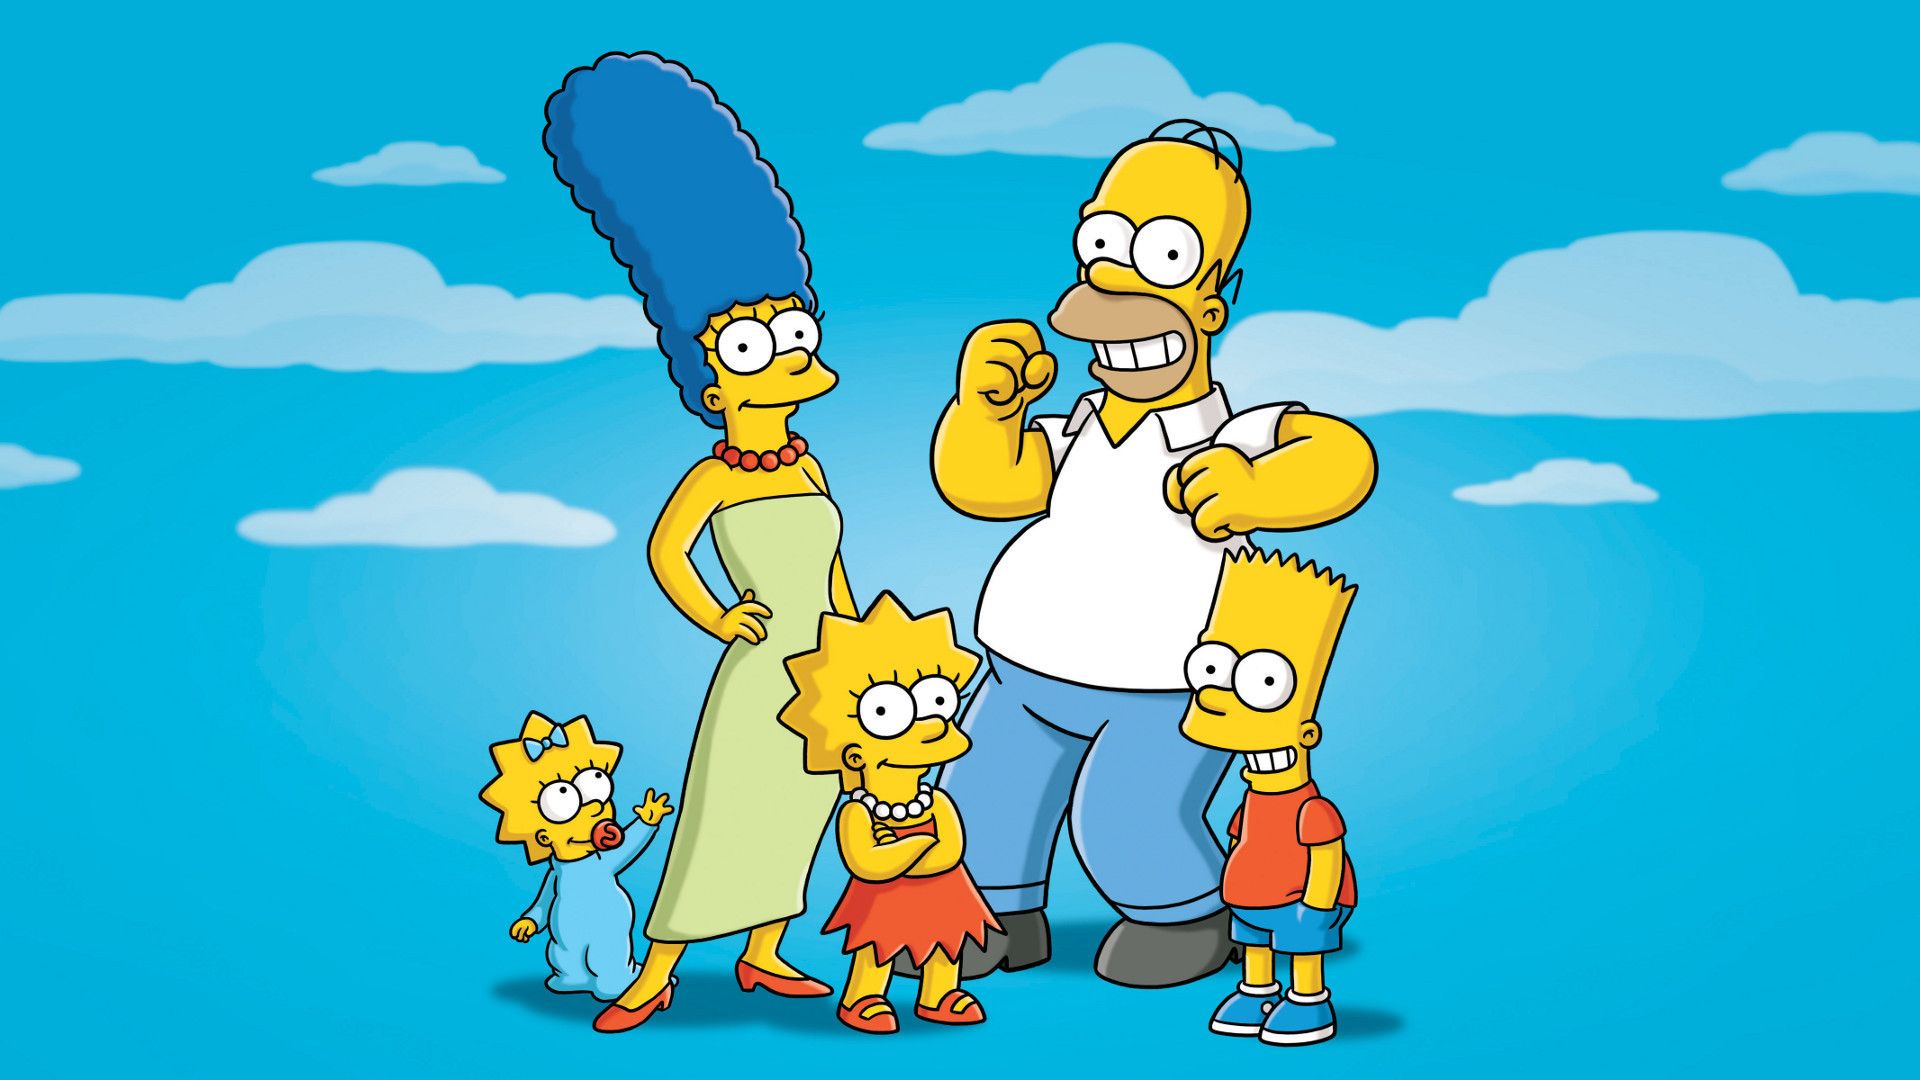 Free HD Simpsons Wallpapers | PixelsTalk.Net